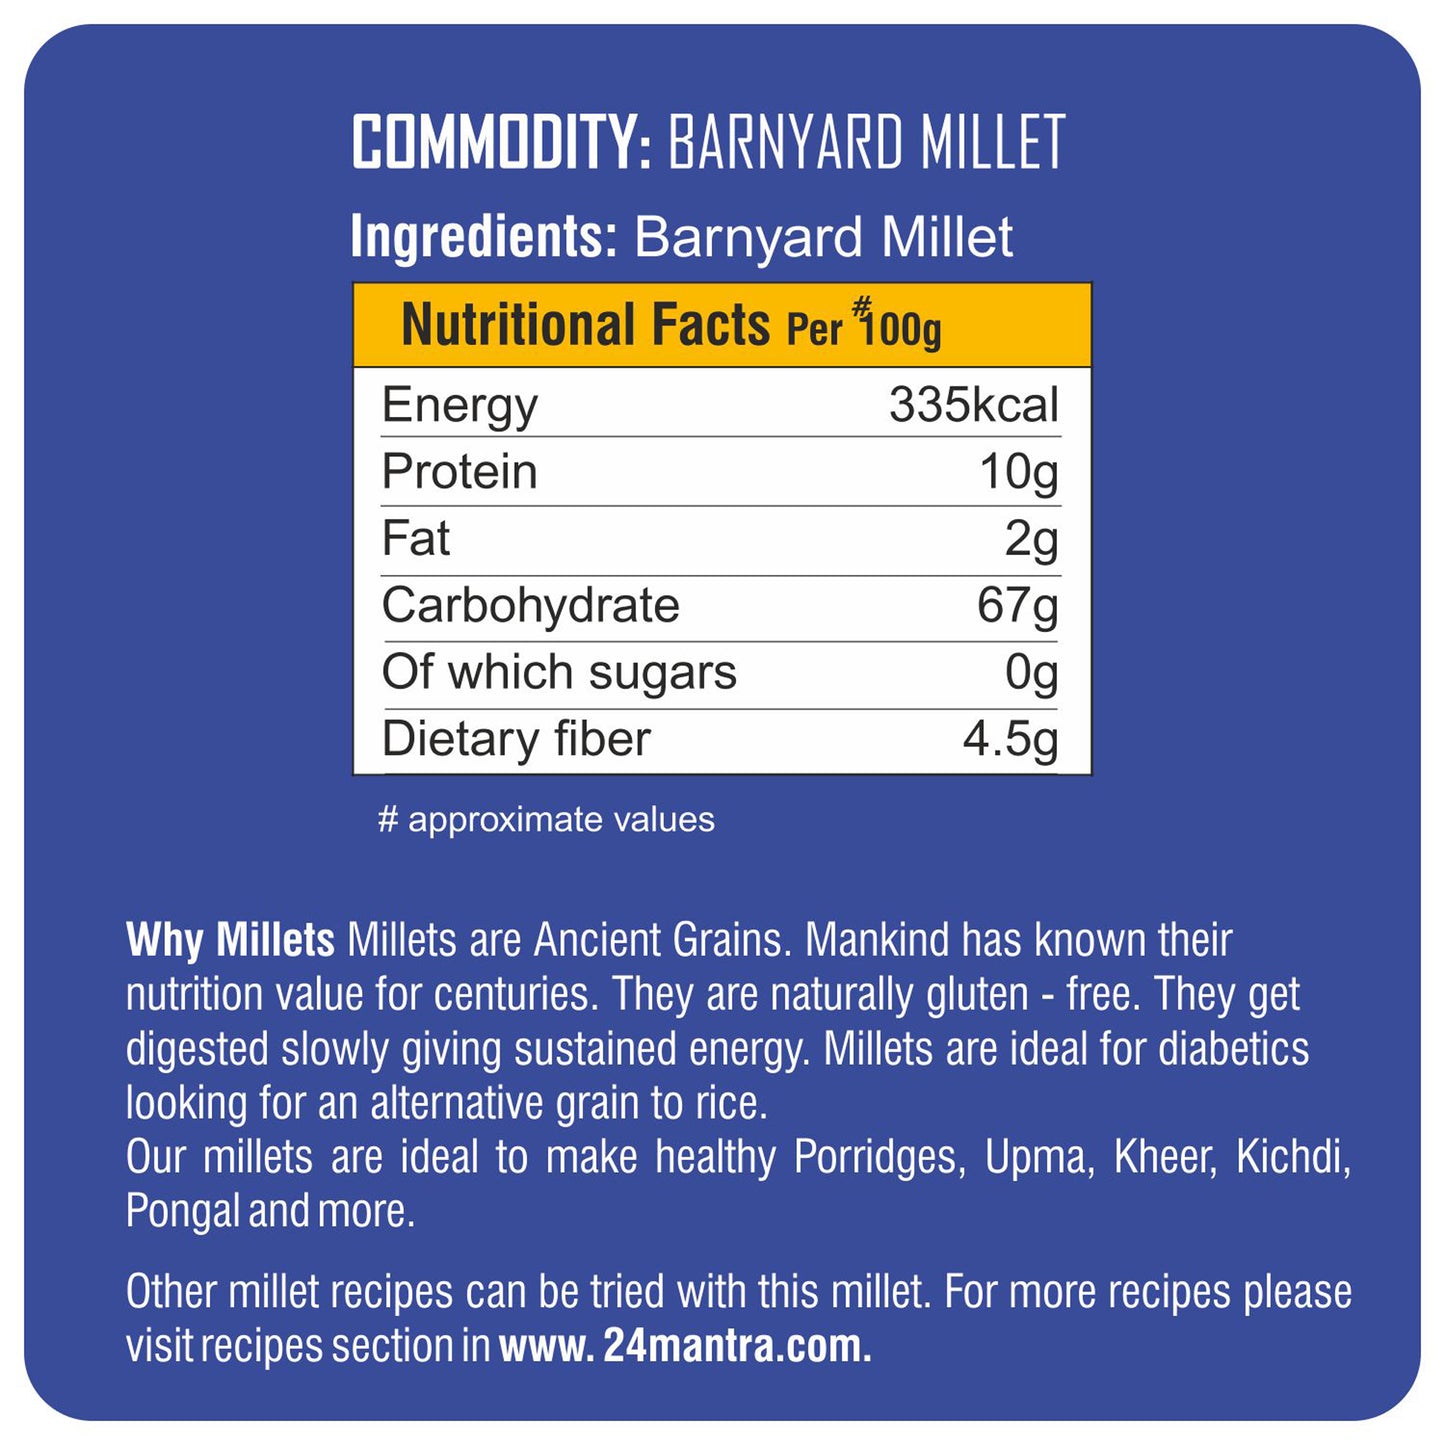 ingredient detailing - Barnyard Millet